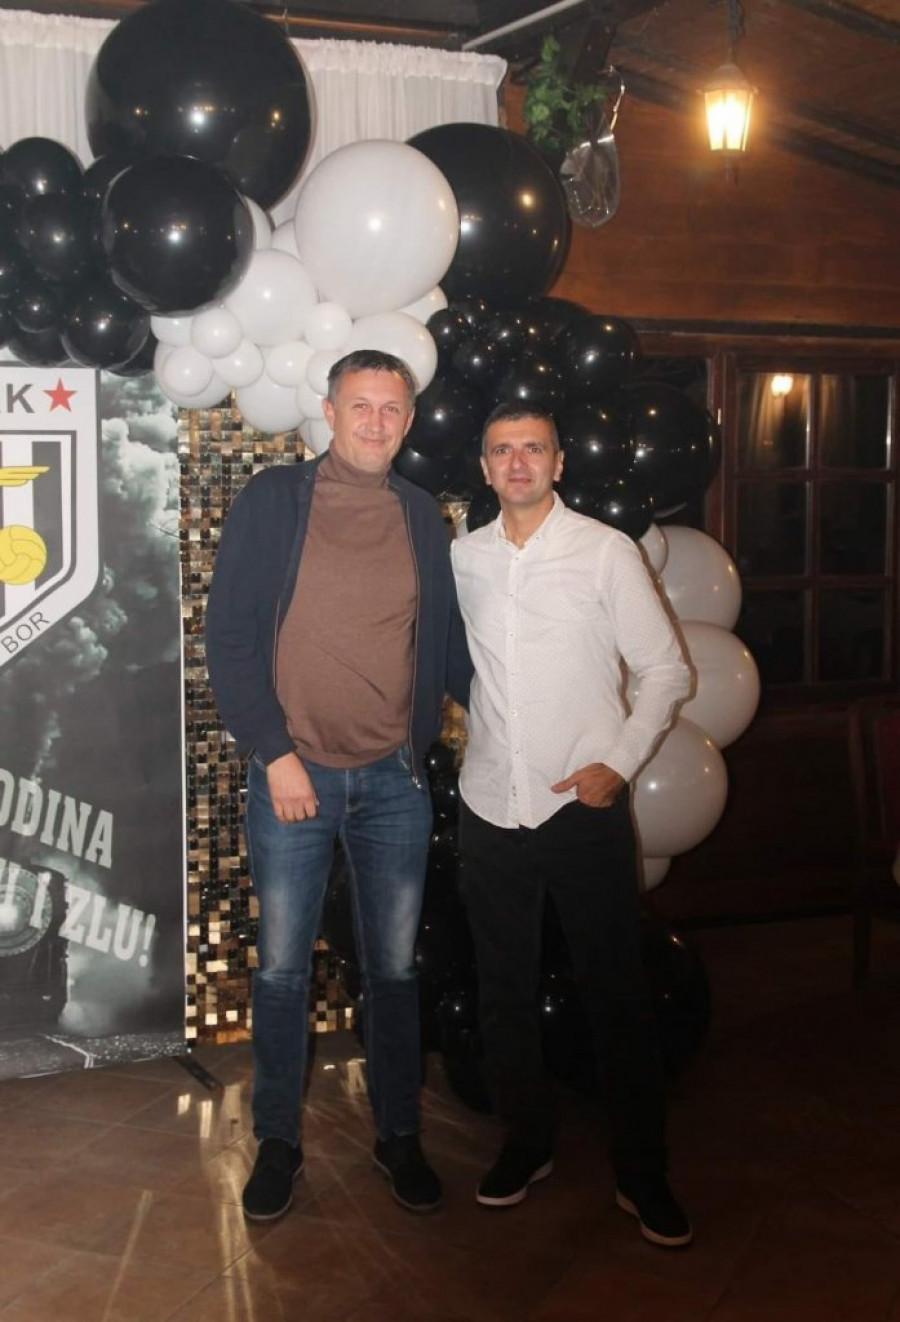 Proslava 99. rođendana Fudbalskog kluba ŽAK iz Sombora